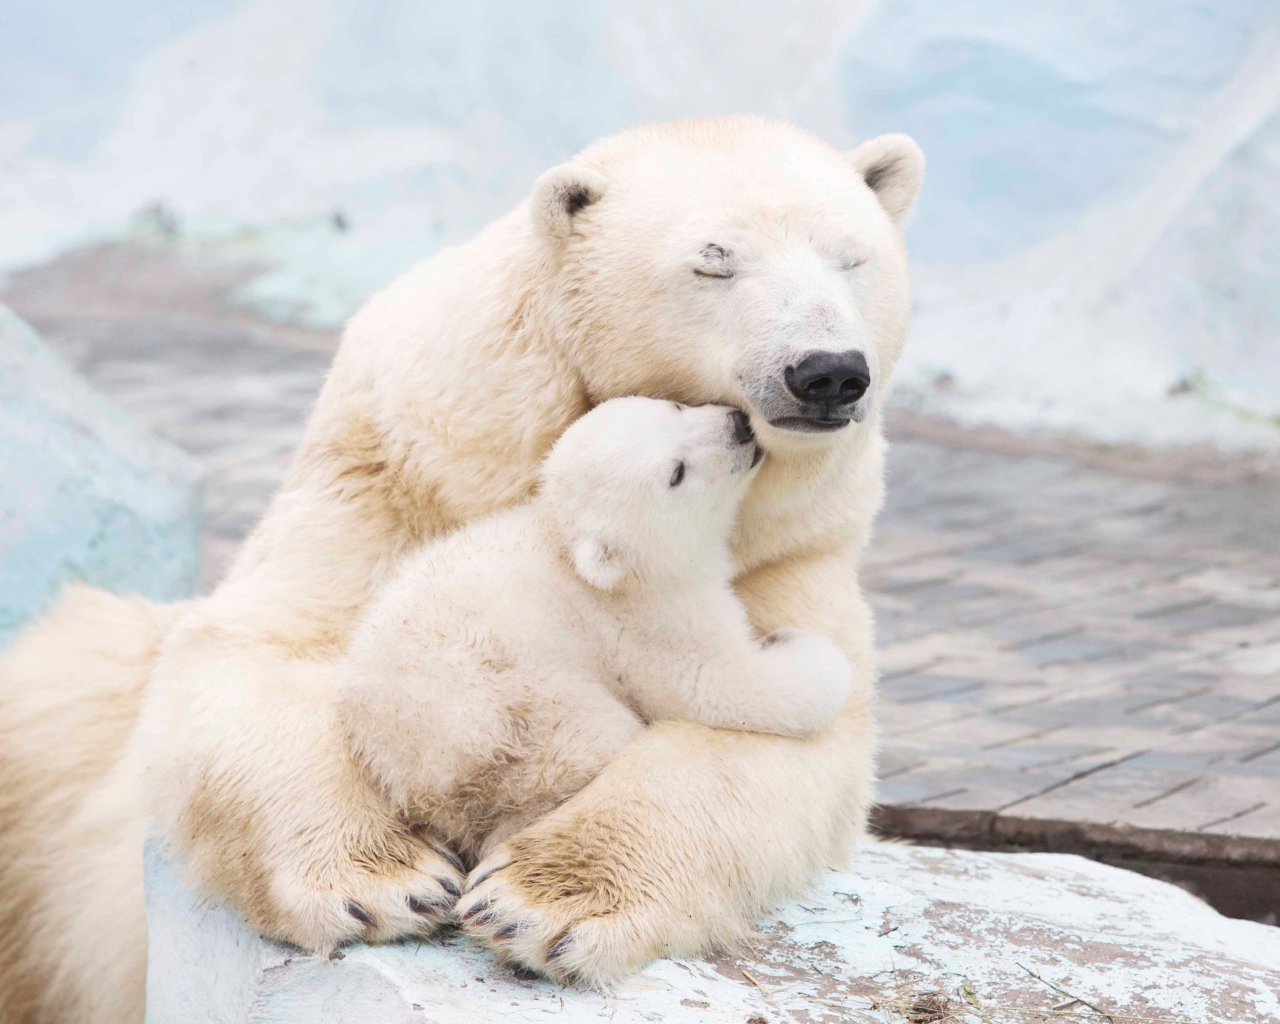 Large white bear hugs a cub